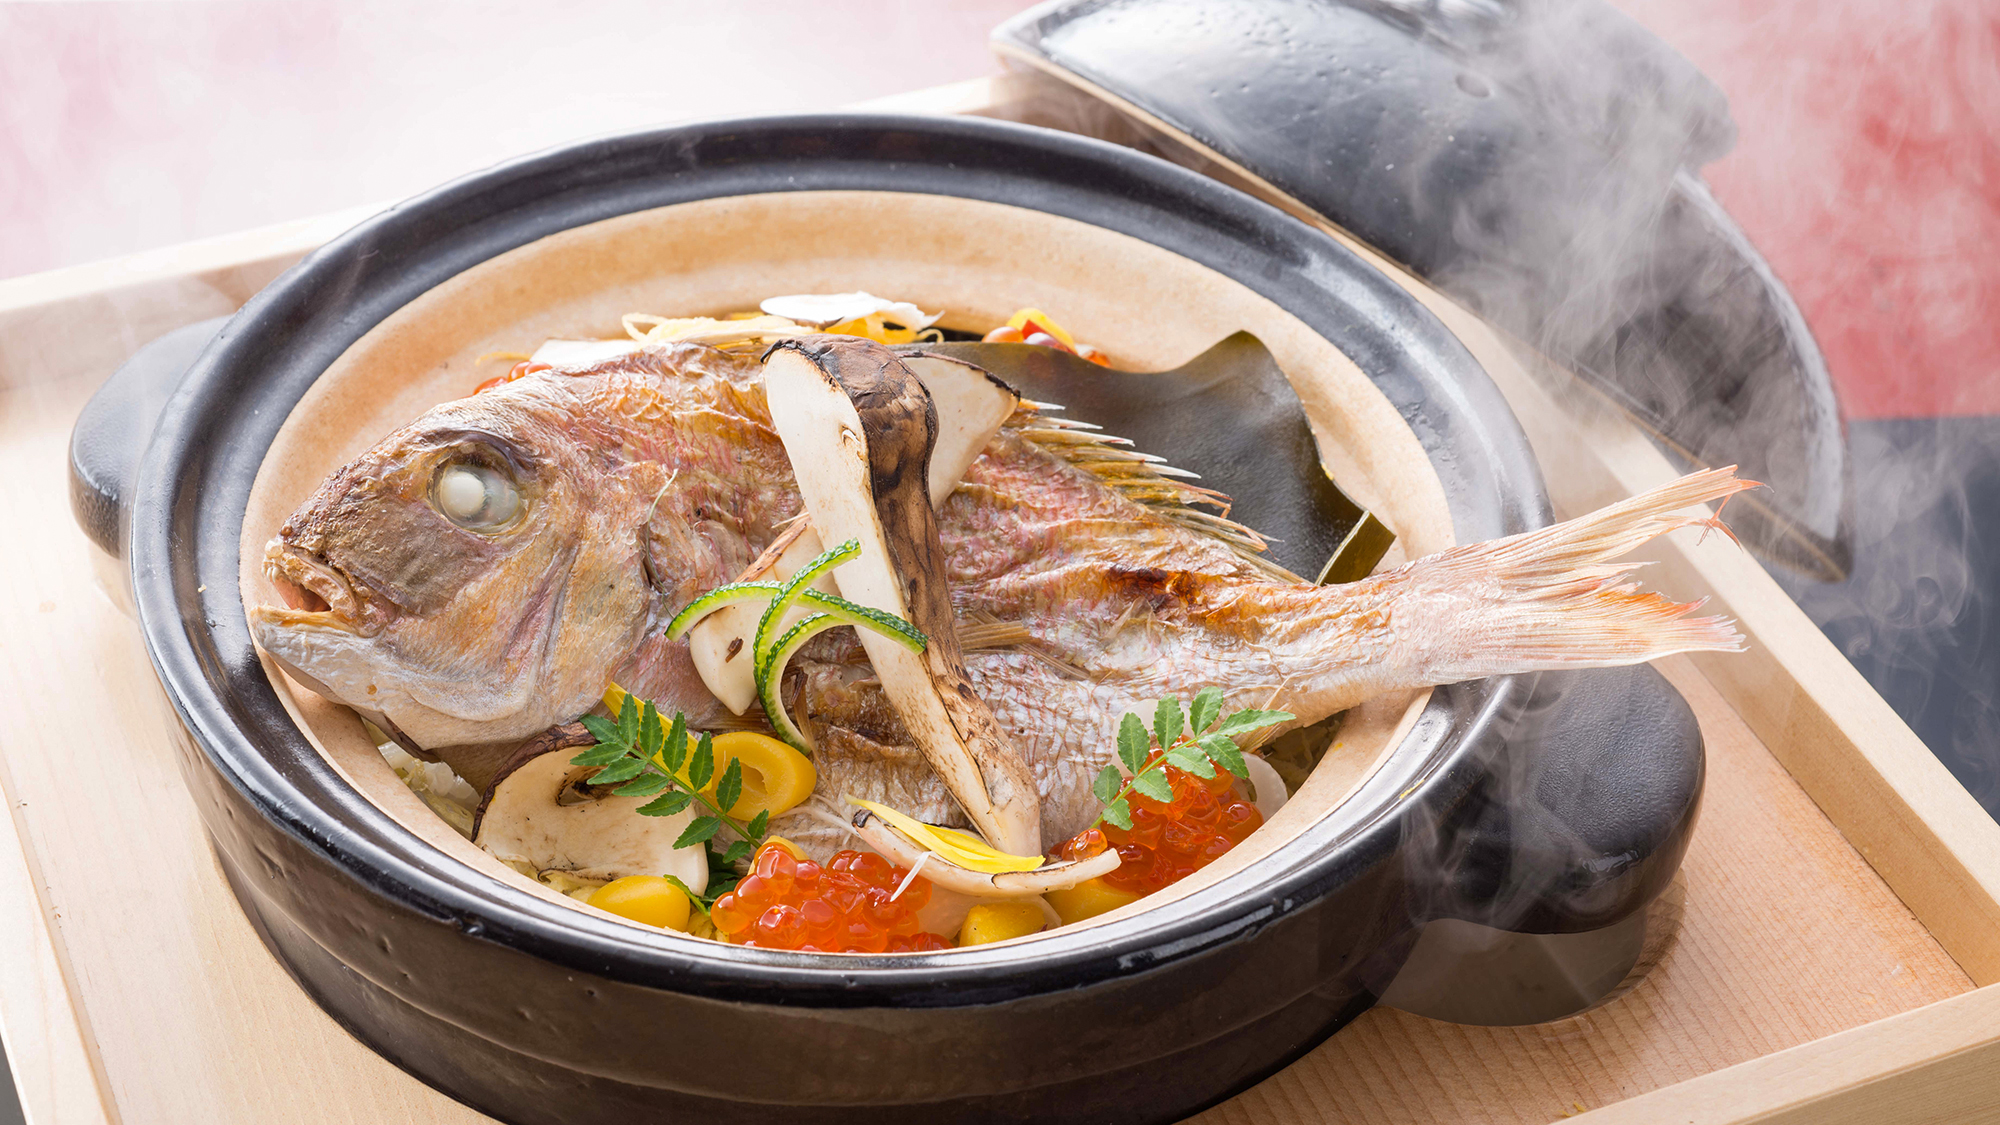 【朝ごはんフェスティバル入賞メニュー】真鯛と松茸の土鍋炊き込みご飯